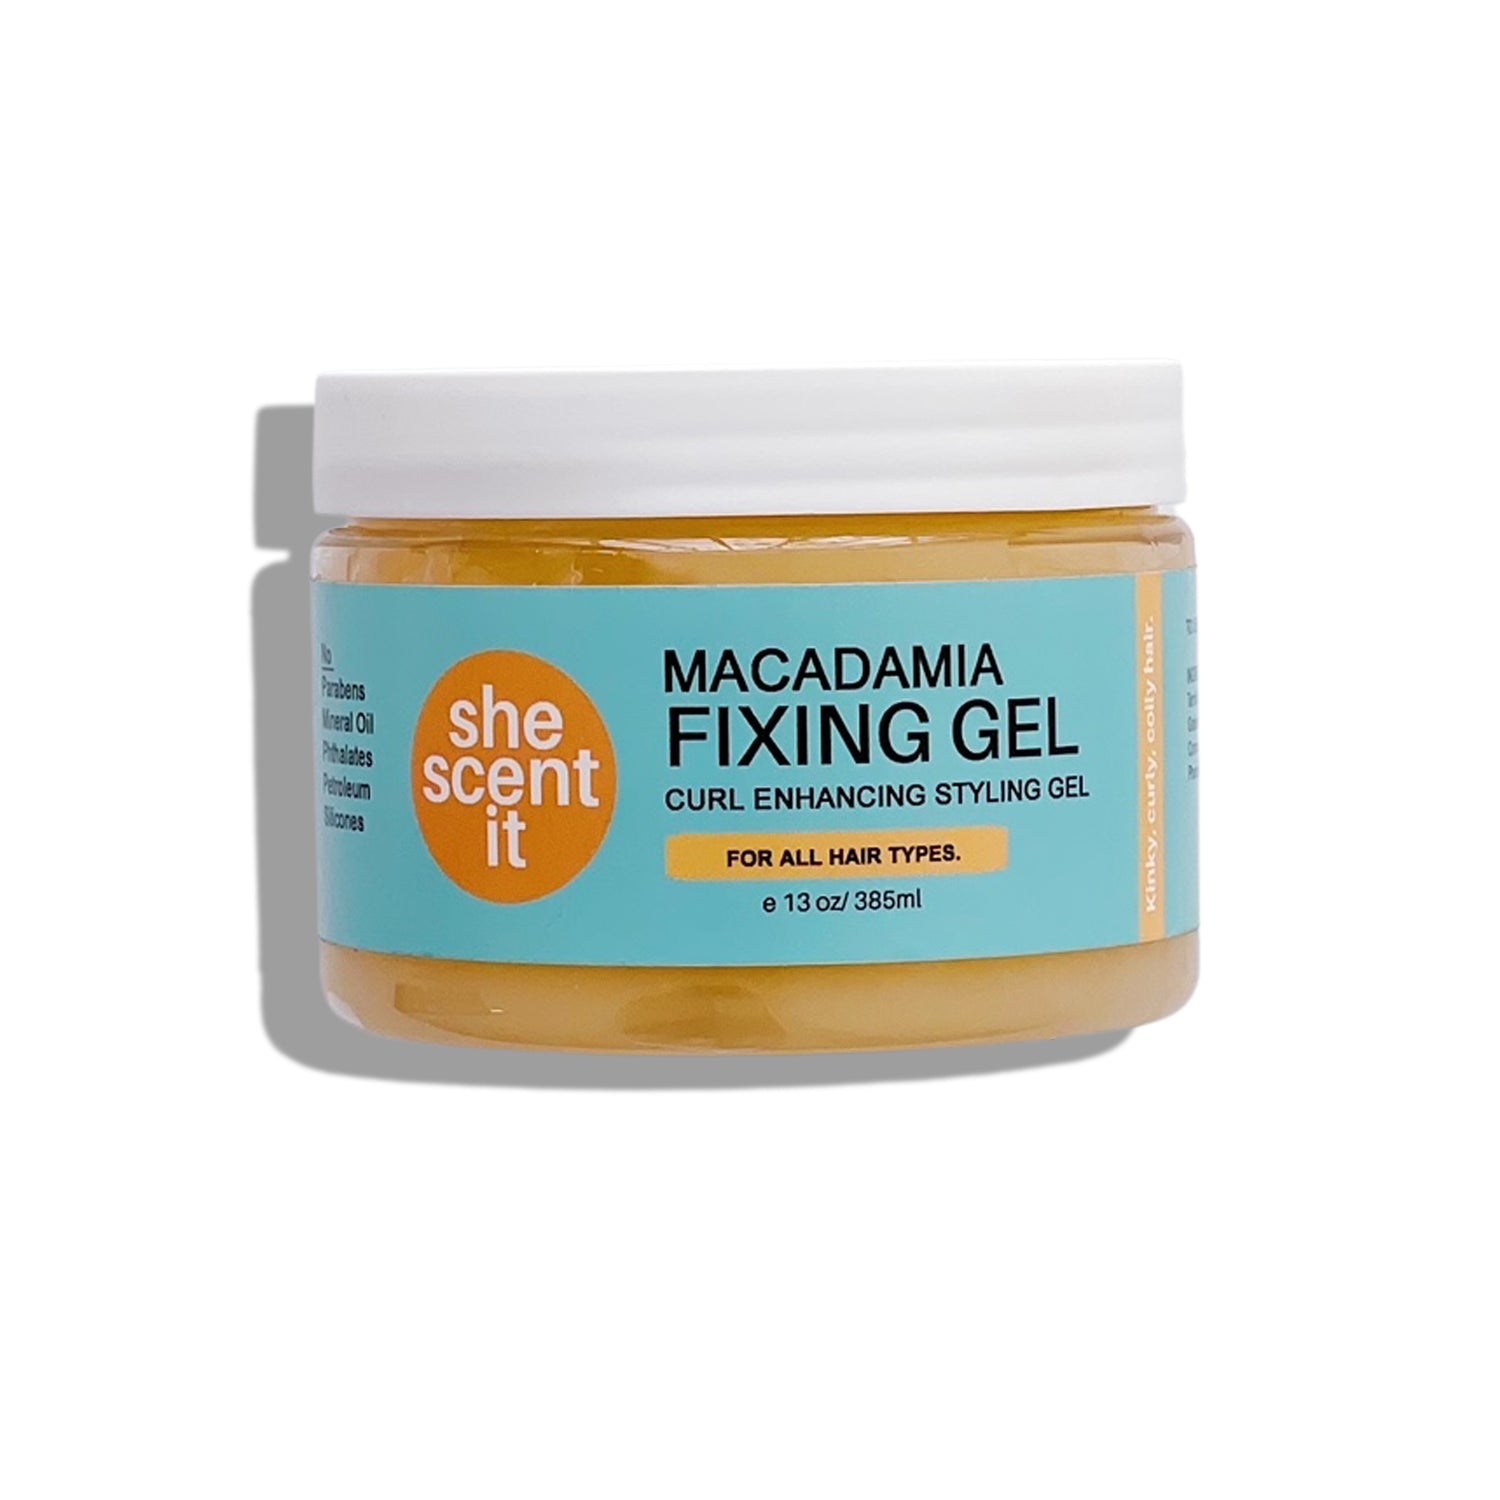 Macadamia Fixing Gel